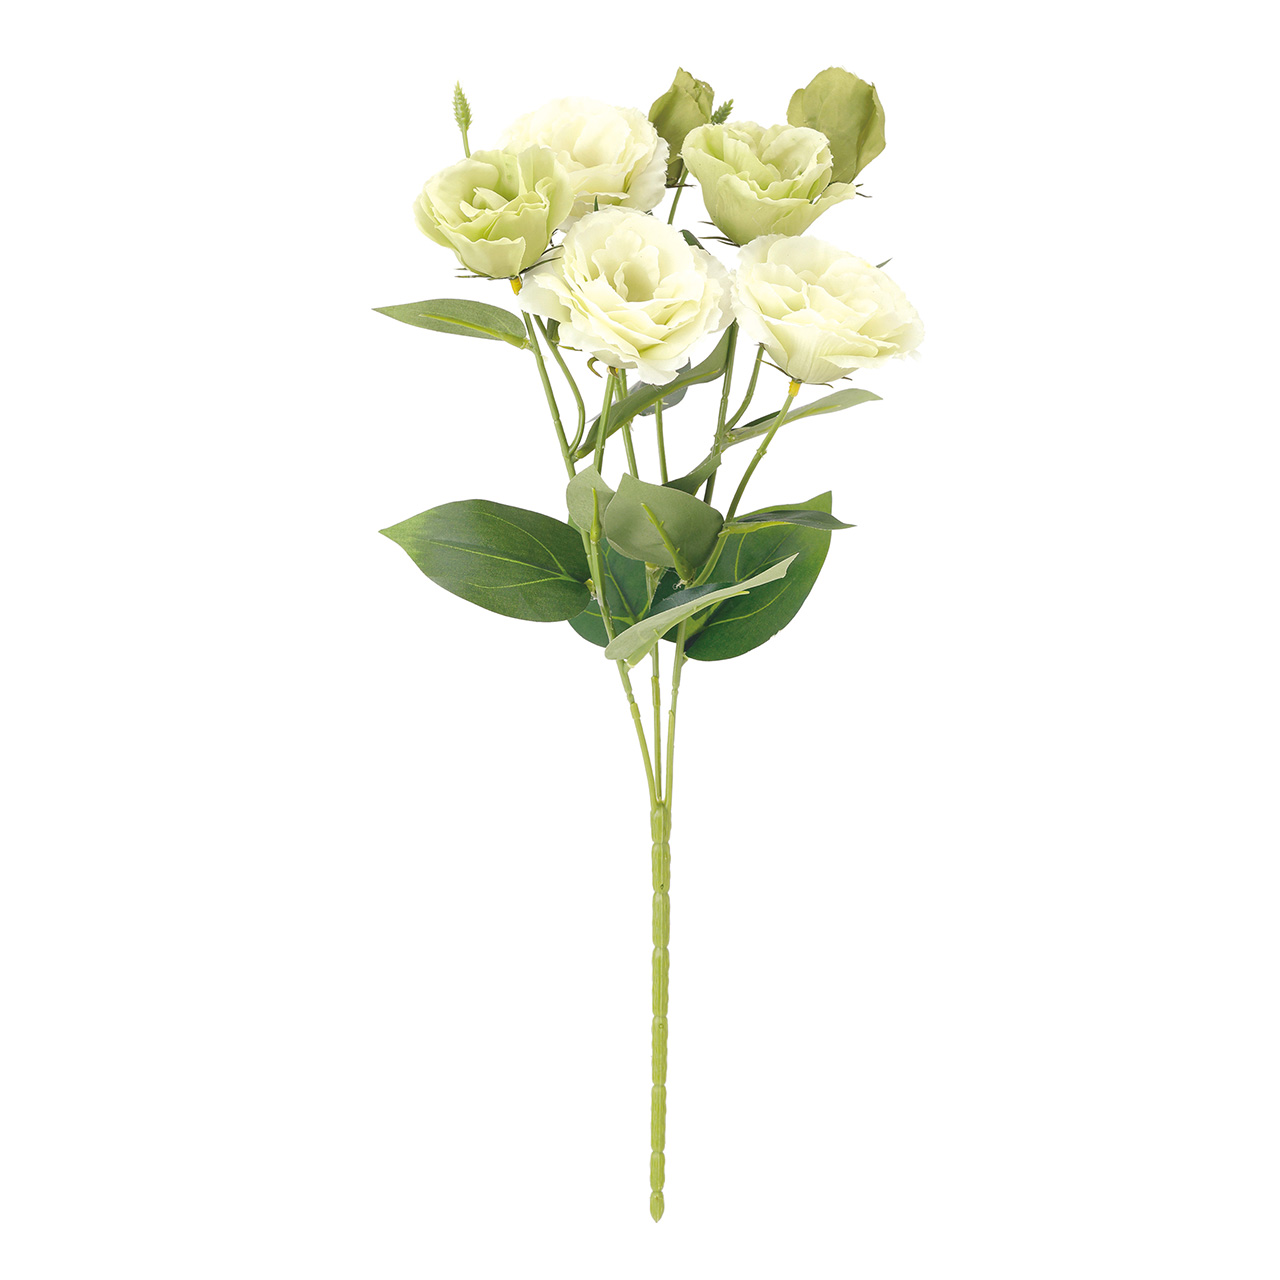 MAGIQ　リシアンサスブッシュ　ライトグリーン　アーティフィシャルフラワー　造花　リシアンサス　トルコキキョウ　FM002036-023